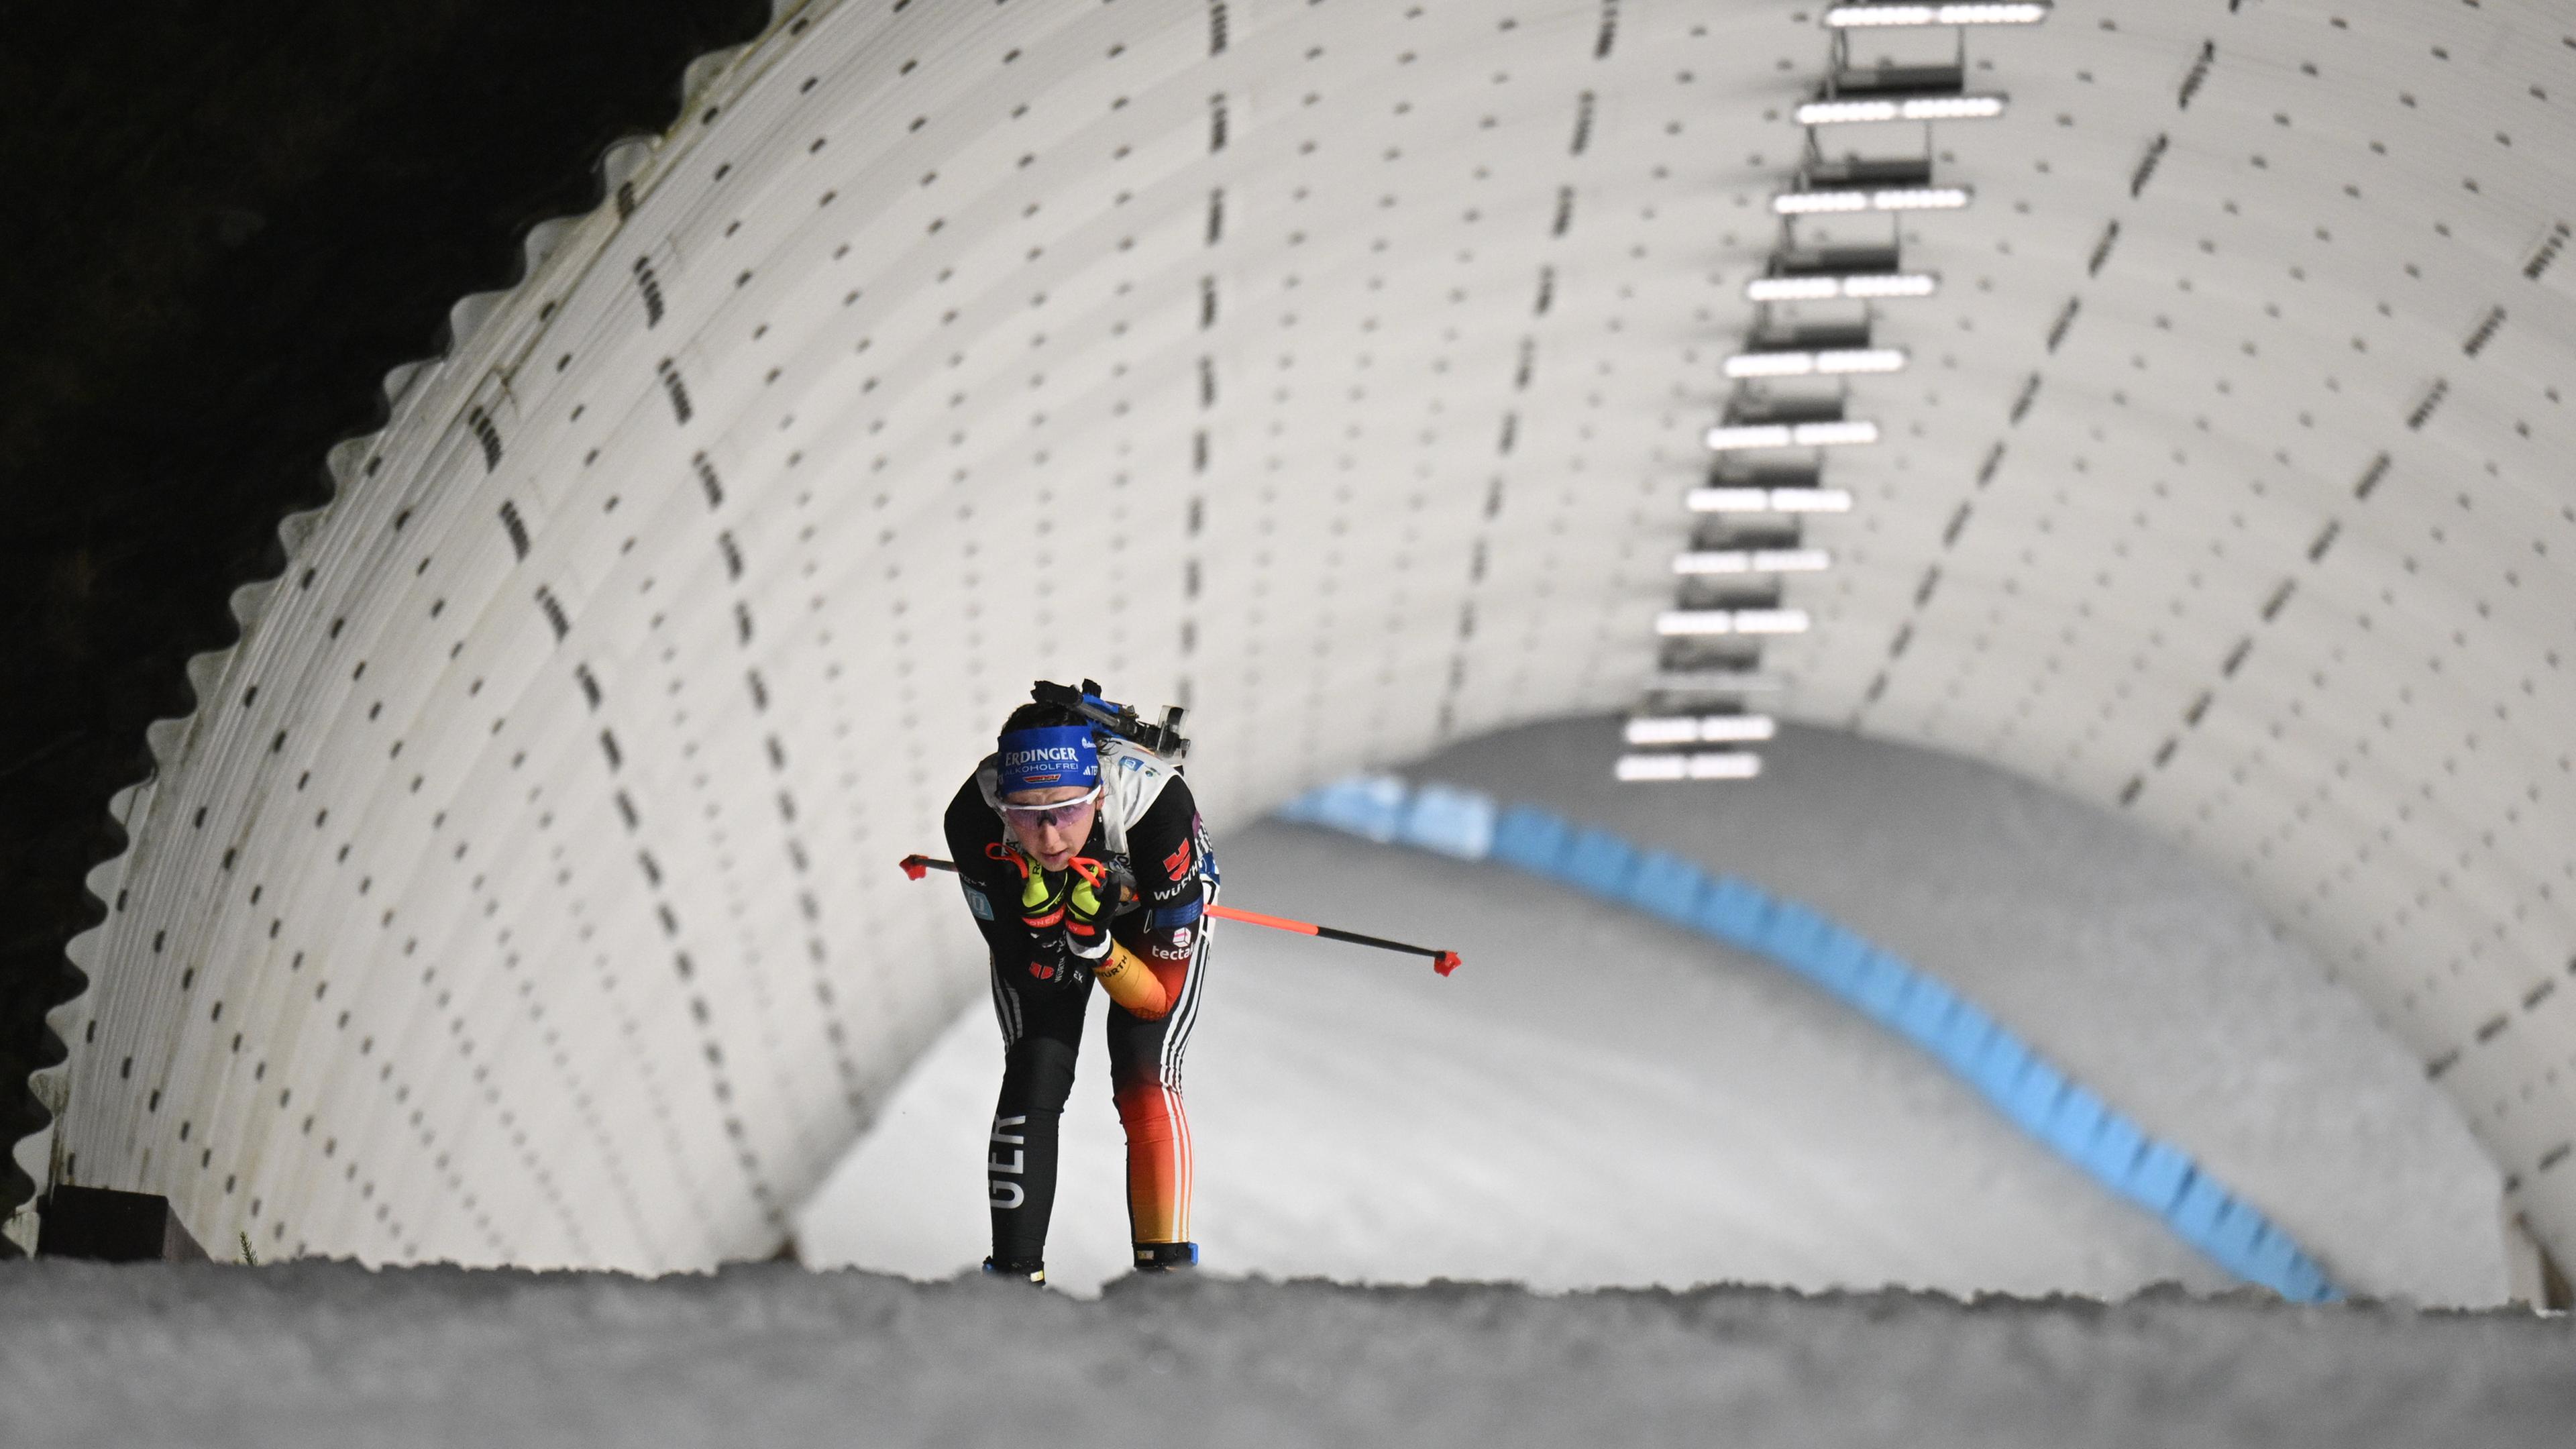 Nove Mesto Na Morave, Biathlon-Weltmeisterschaft, Mixed-Staffel: Franziska Preuß fährt aus einem Skitunnel heraus.